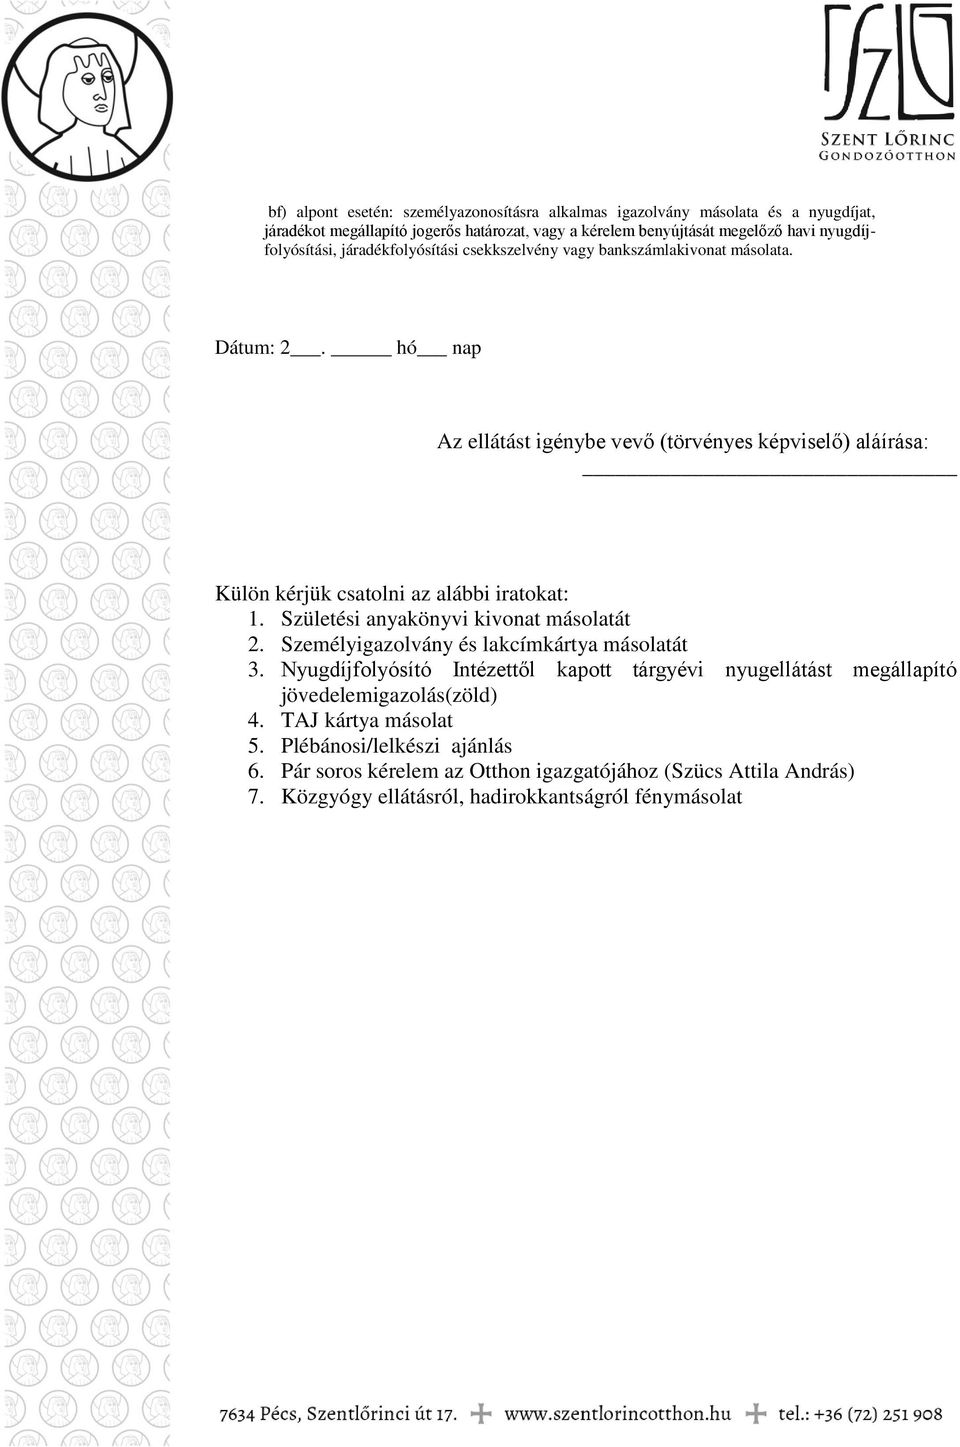 Szent Lőrinc Gondozóotthon (7634 Pécs, Szentlőrinci út 17. tel.: 72/ ) -  PDF Ingyenes letöltés